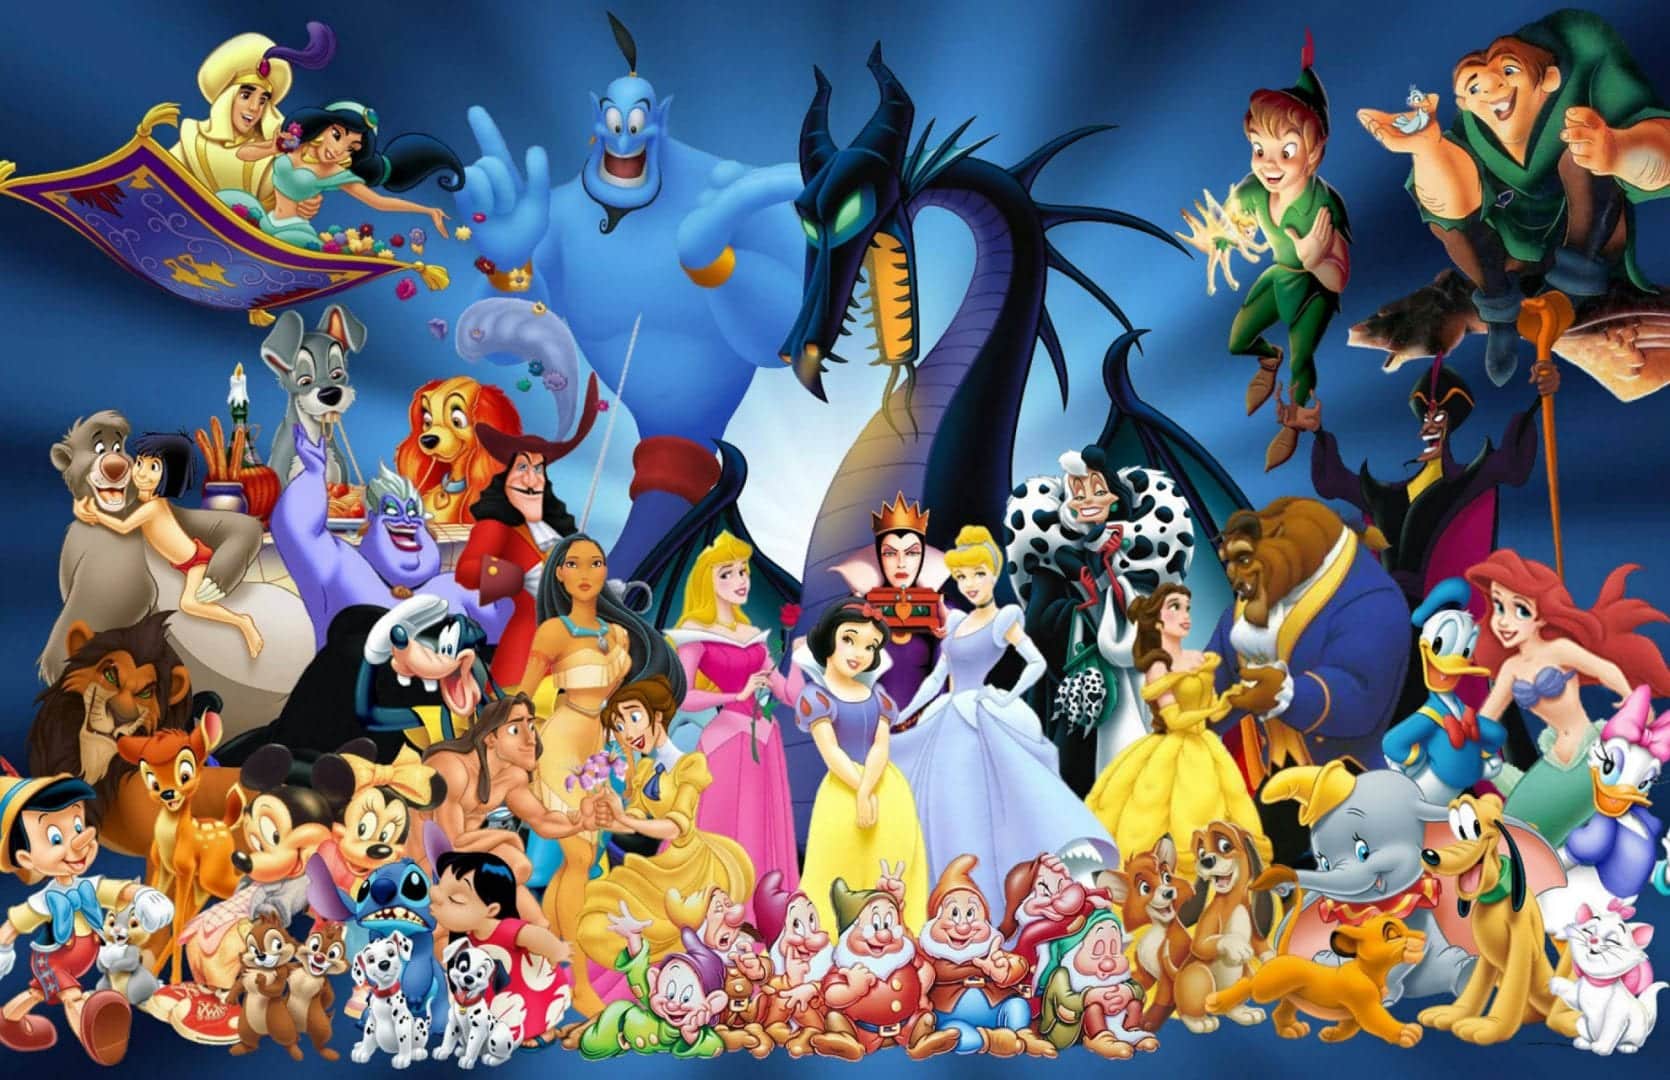  미키 마우스 - 디즈니의 가장 위대한 상징의 영감, 기원 및 역사